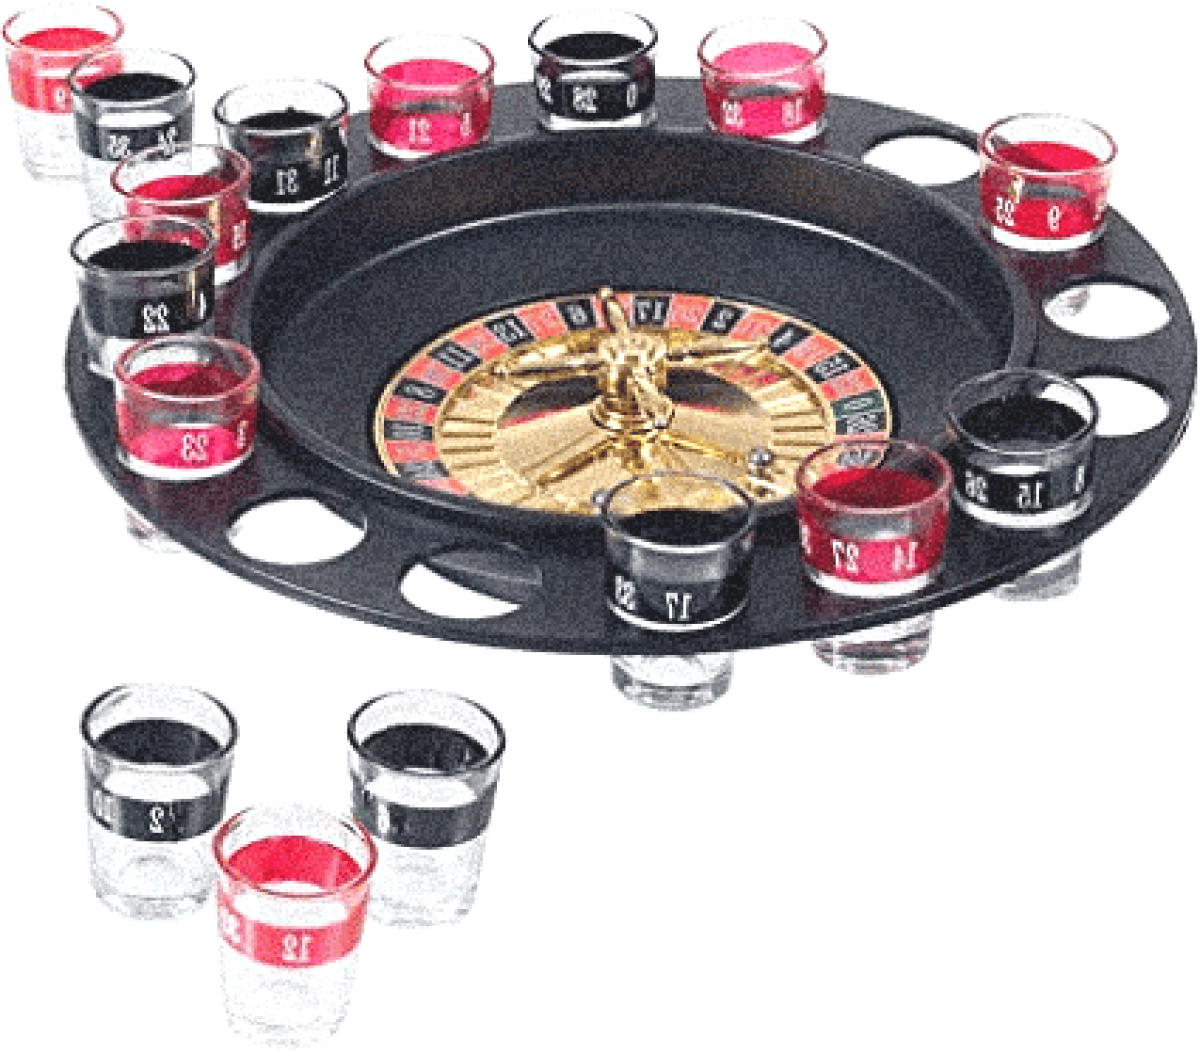 jeu de roulette à boire casino 16 verres shot - Coloris : Noir491005630